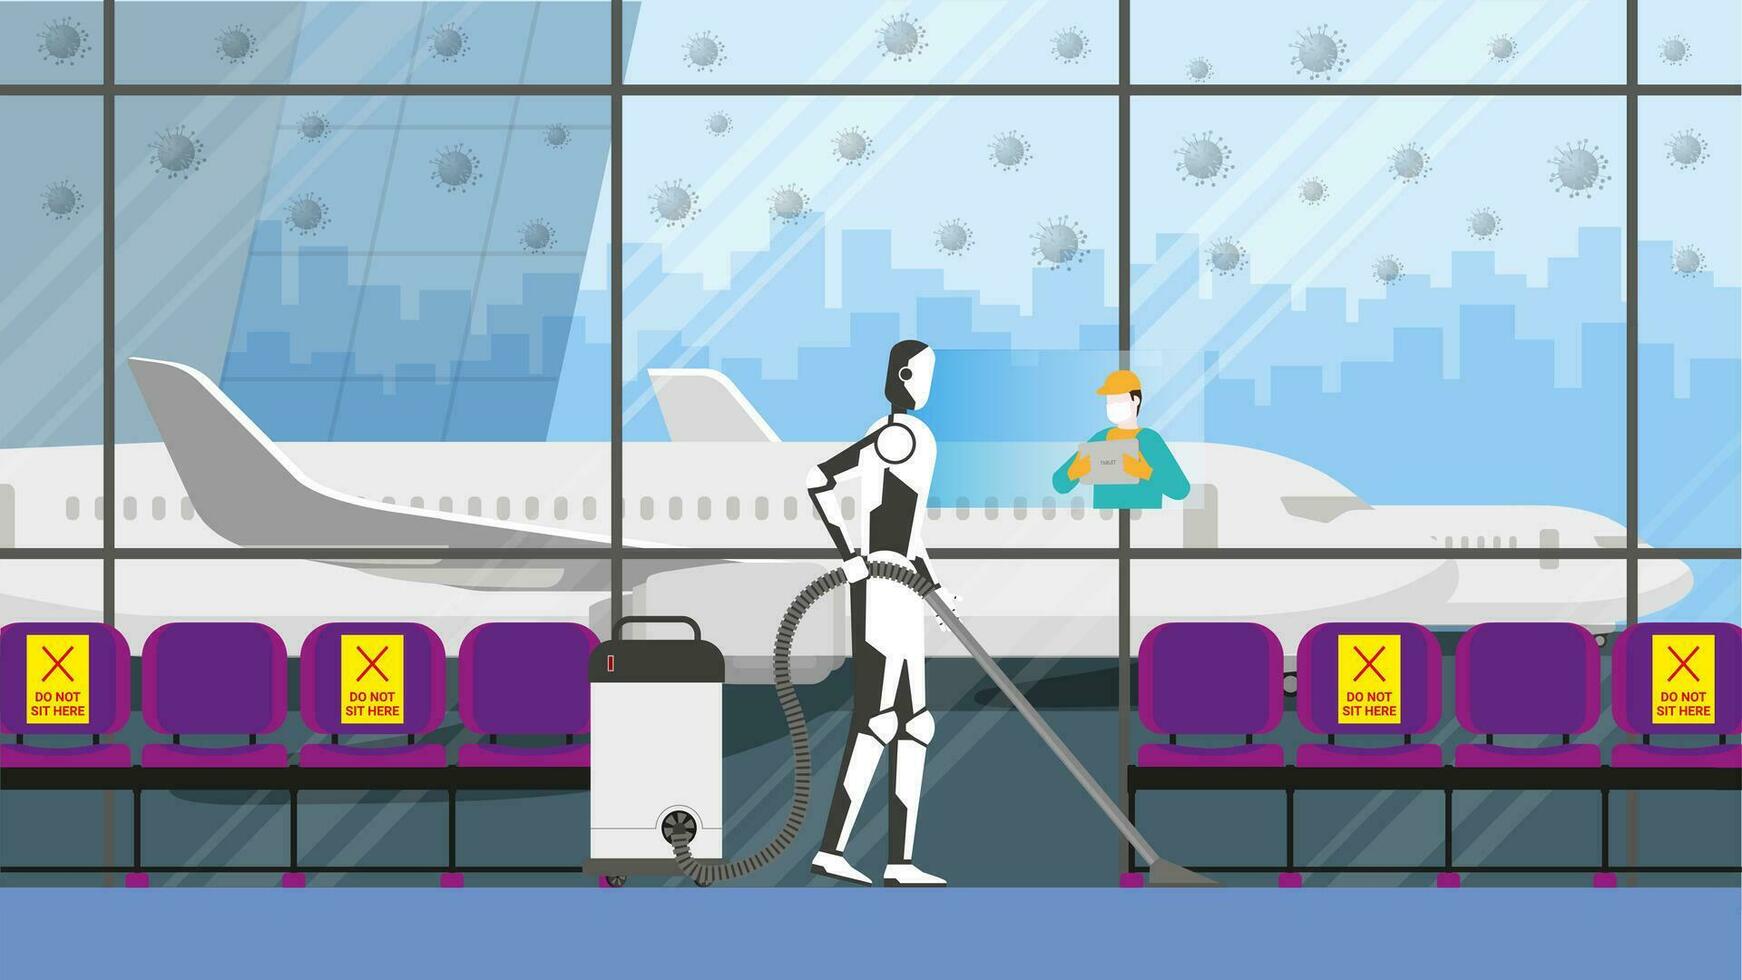 Reinigung Roboter Steuerung durch Mensch Fernbedienung im Risiko Bereich. Flughafen Terminal. vektor